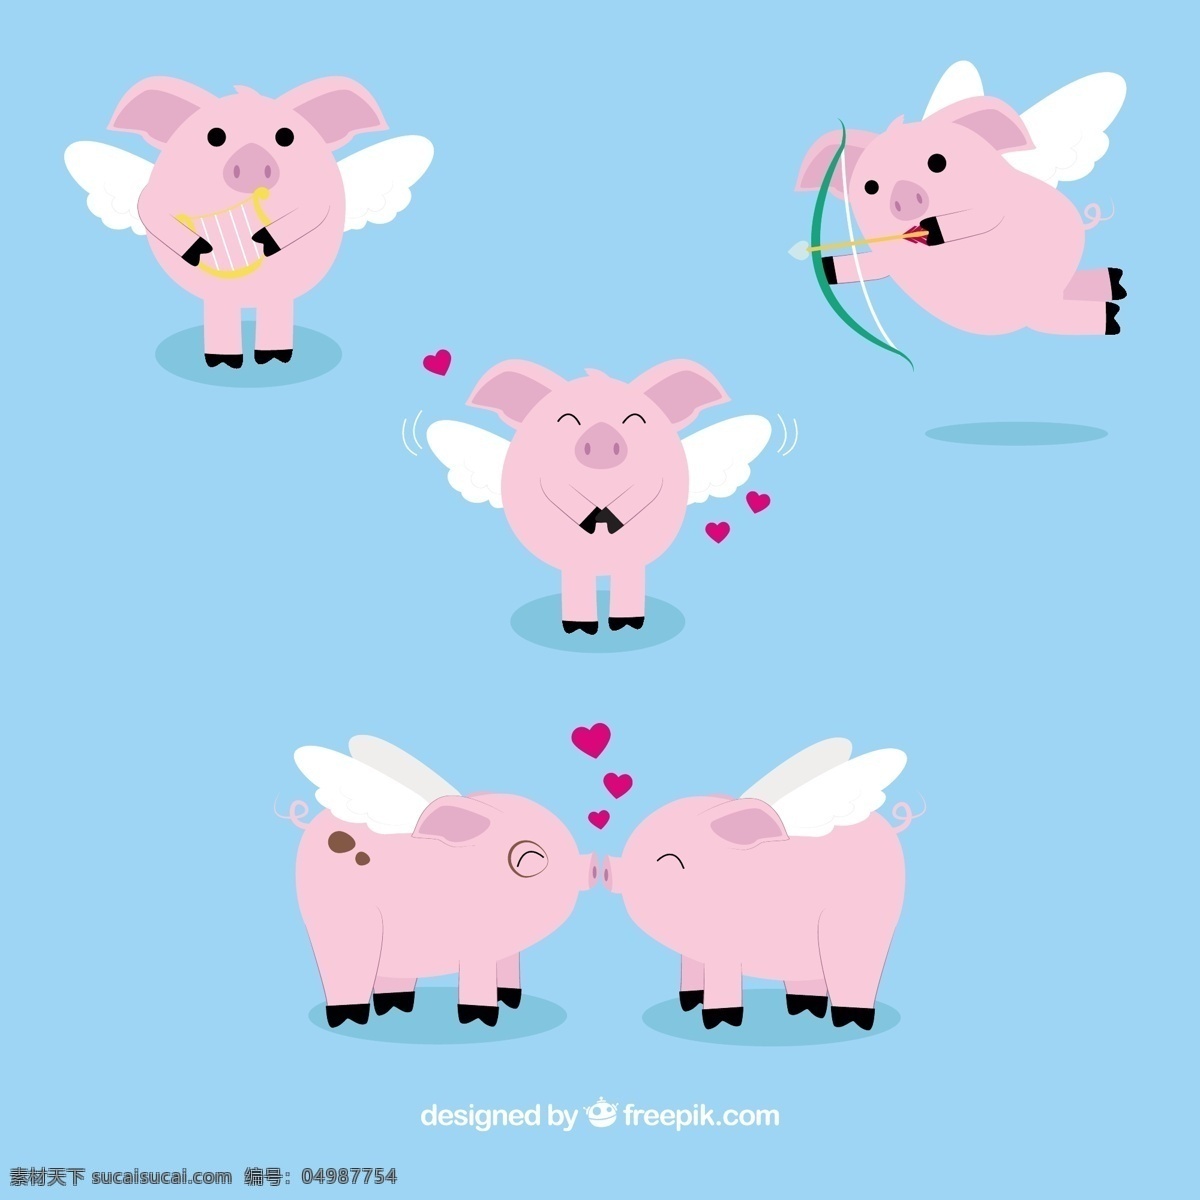 组 粉色 飞天 小 猪 可爱 卡通 卡哇伊 矢量素材 动物 小动物 创意设计 简约 创意 元素 生物元素 动物元素